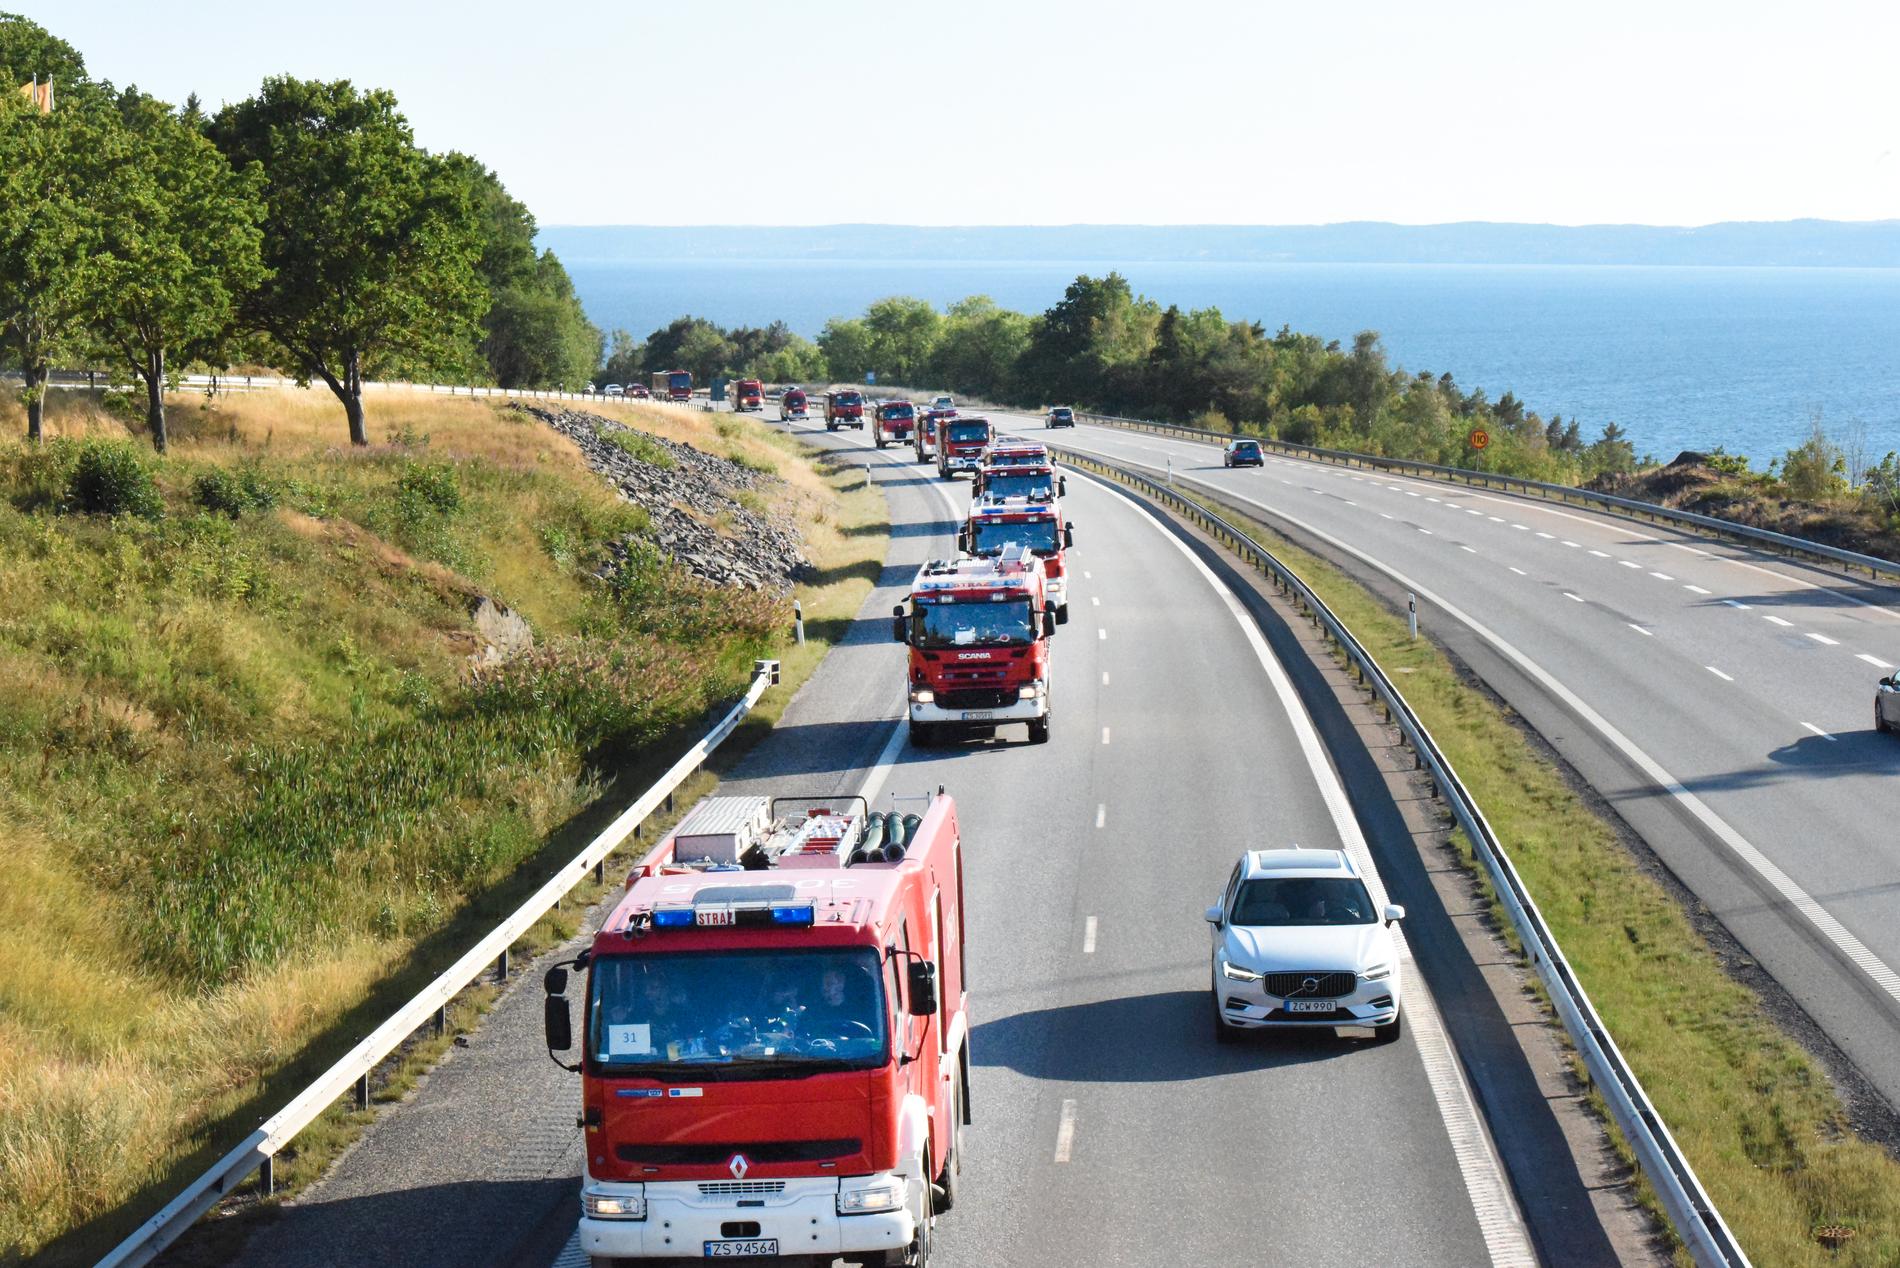 De polska brandbilarna kom till Sverige under lördagen. 